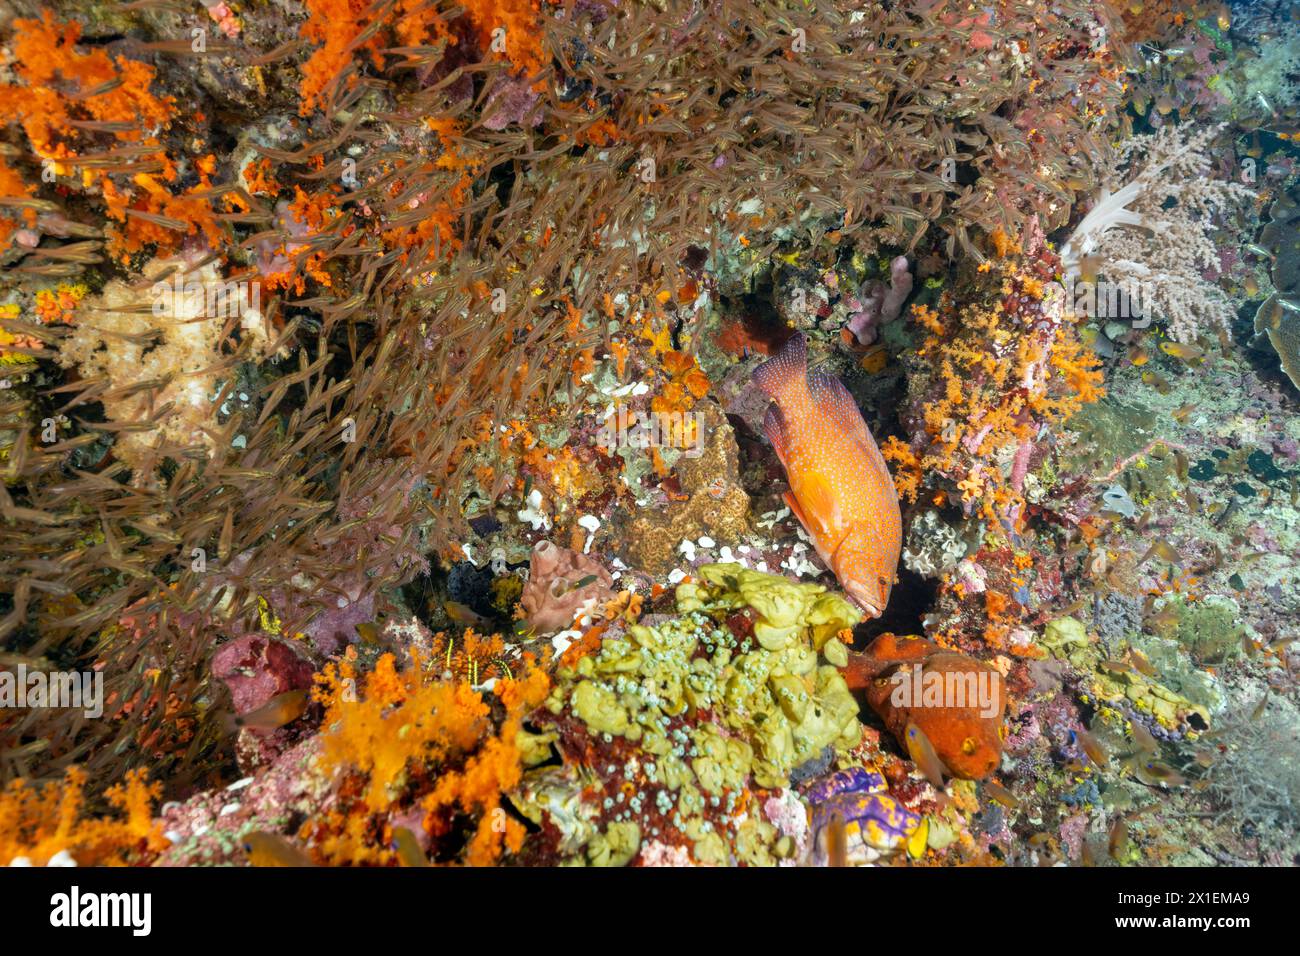 Cernia di coralli, Cephalopholis miniata, che insegue pesci di vetro nelle fessure della barriera corallina, Raja Ampat, Indonesia. Foto Stock